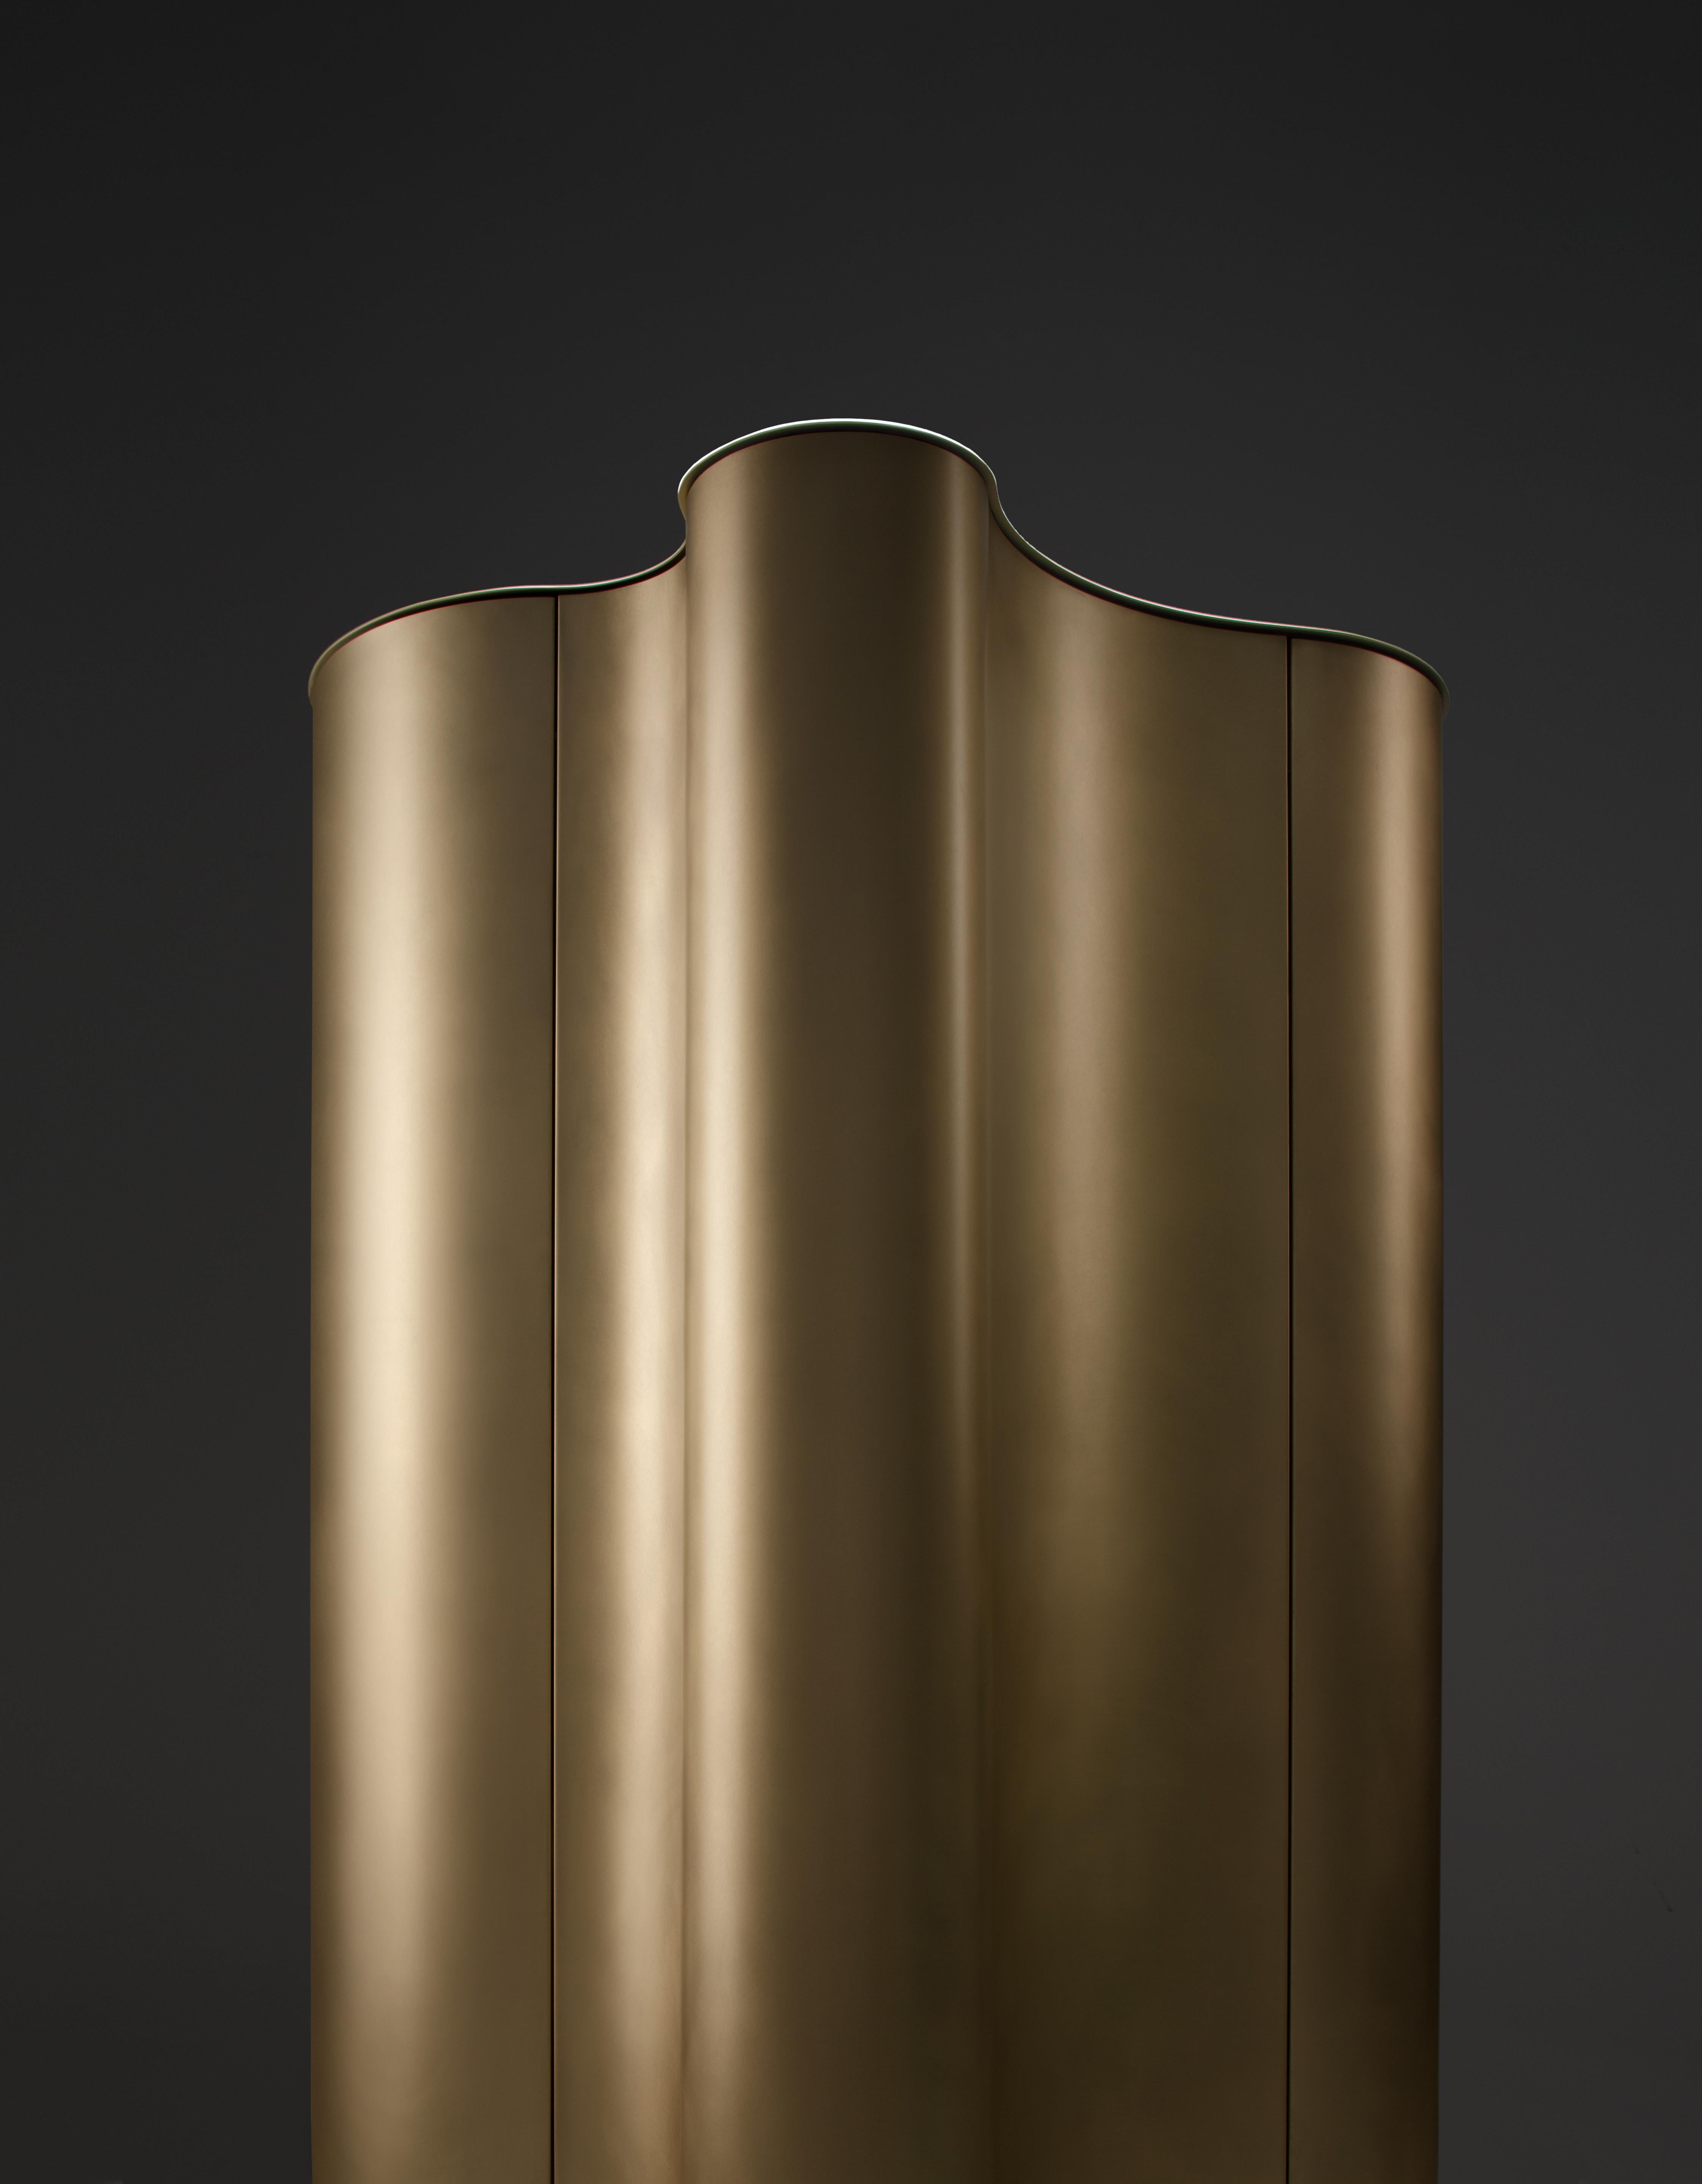 L'armoire Ripple s'inspire de la fluidité et de l'adaptabilité de l'eau, ainsi que de la texture du métal, travaillé de manière experte par l'entreprise. Il en résulte un volume sinueux et polymorphe dans lequel des lignes douces génèrent des